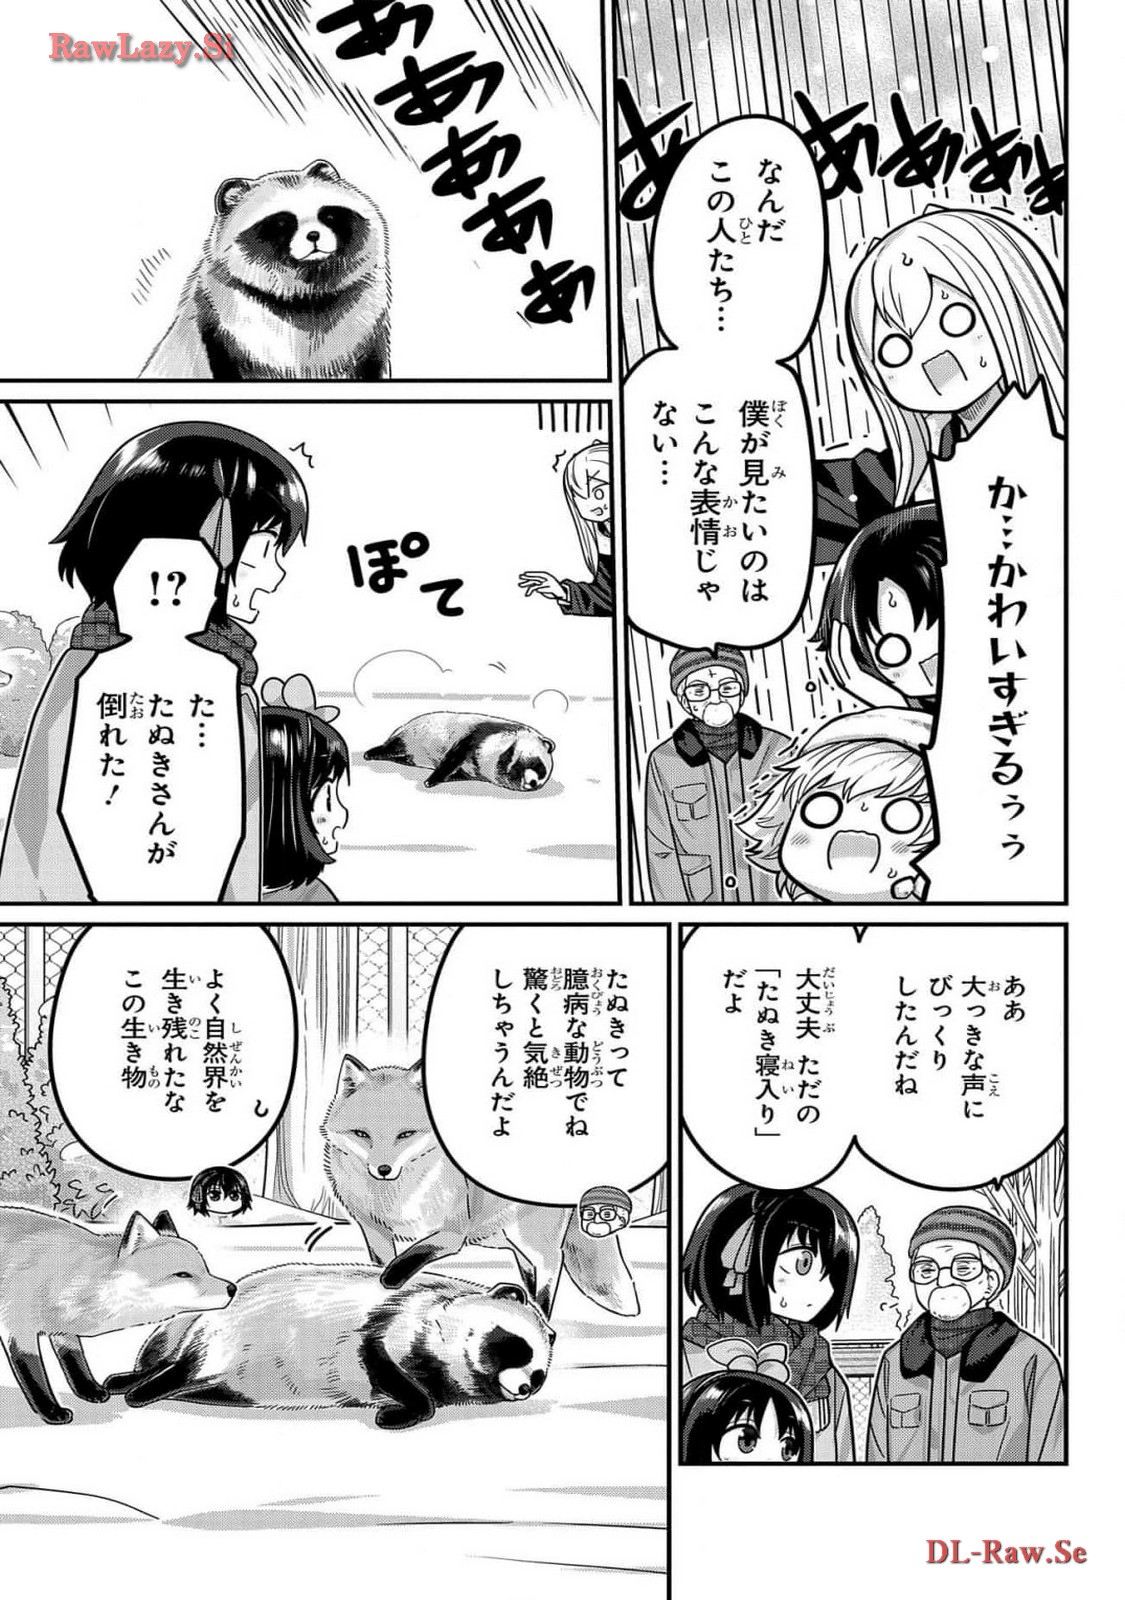 Kawaisugi Crisis - Chapter 102 - Page 7